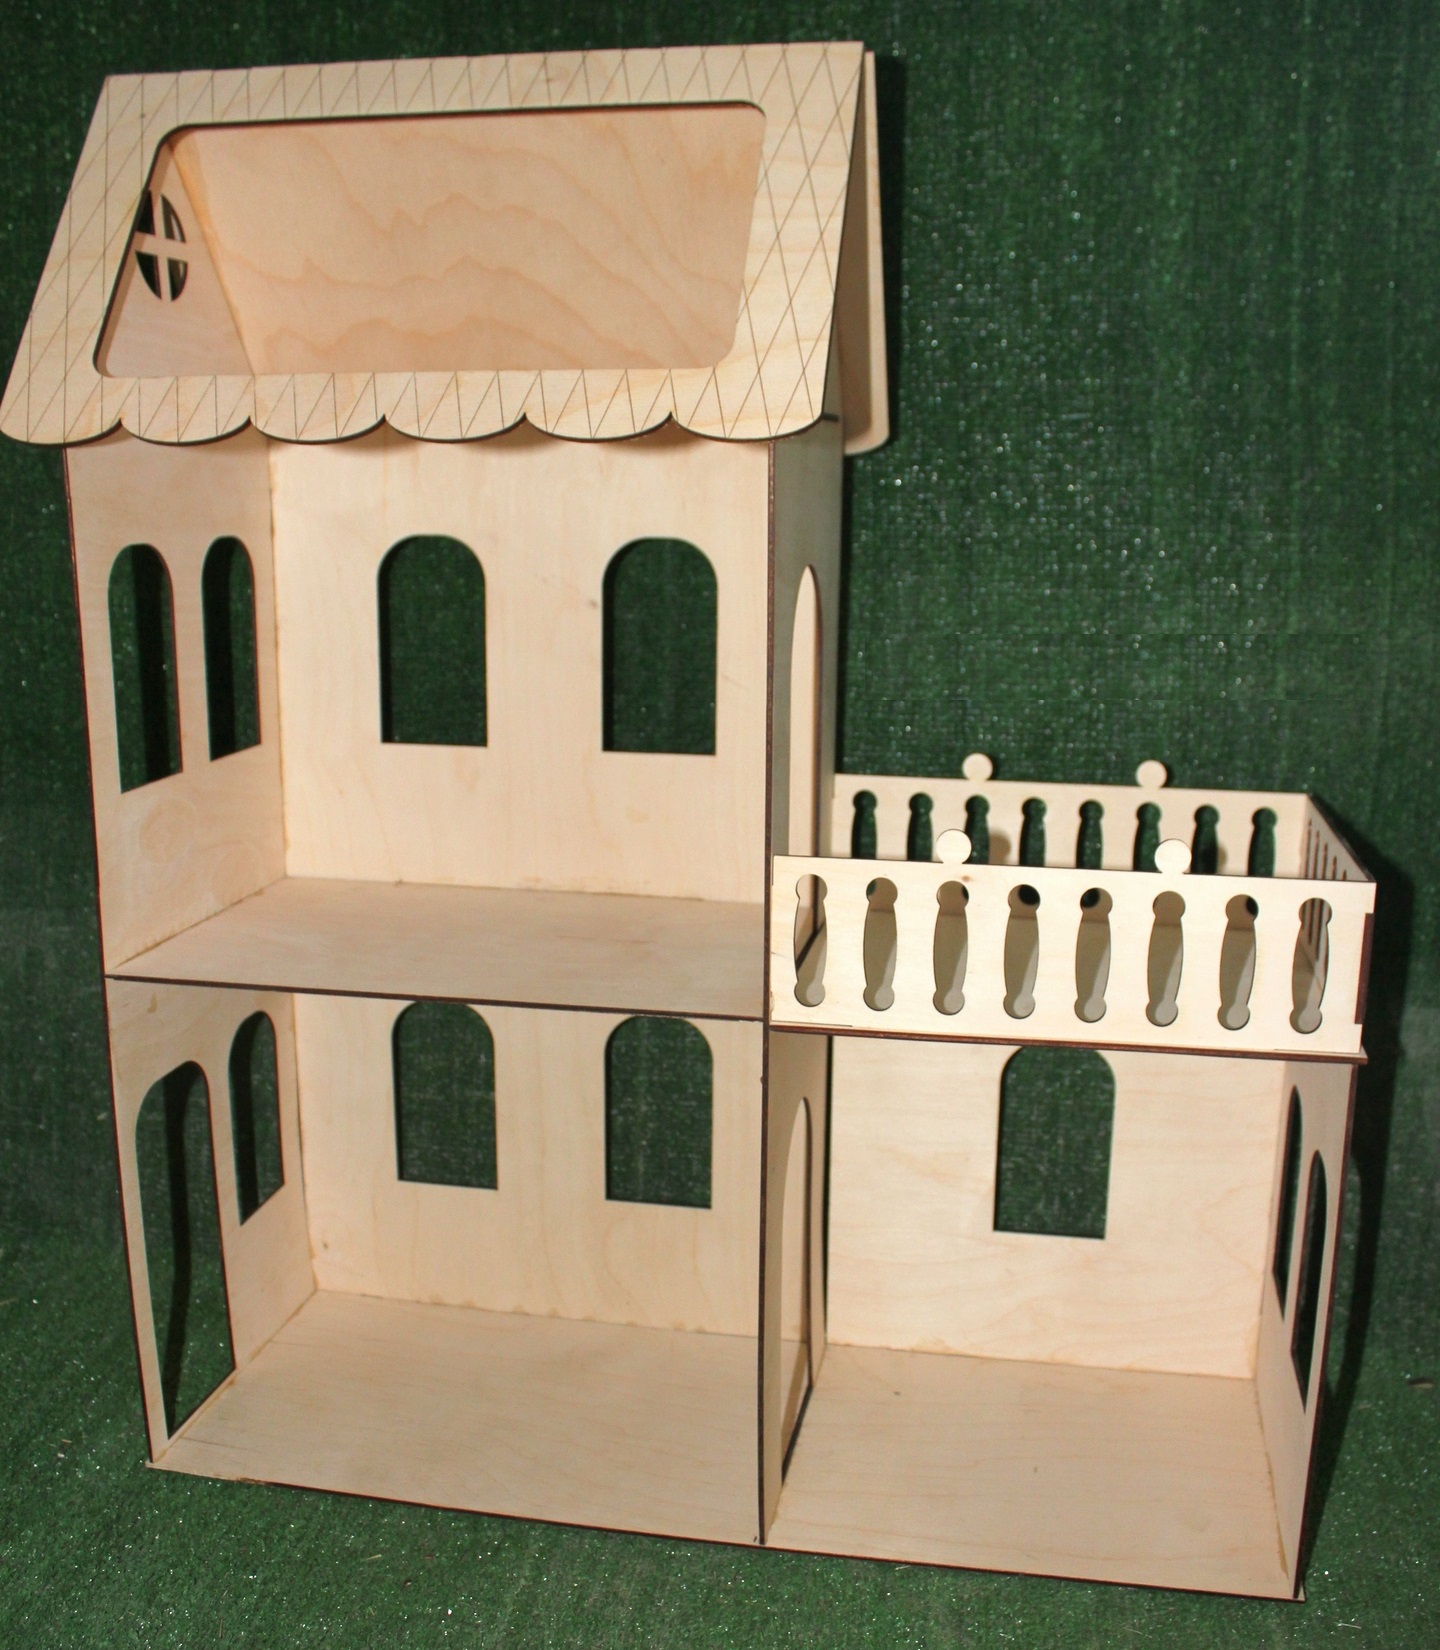 Kit de casa de muñecas en miniatura simple cortada con láser de 3 mm